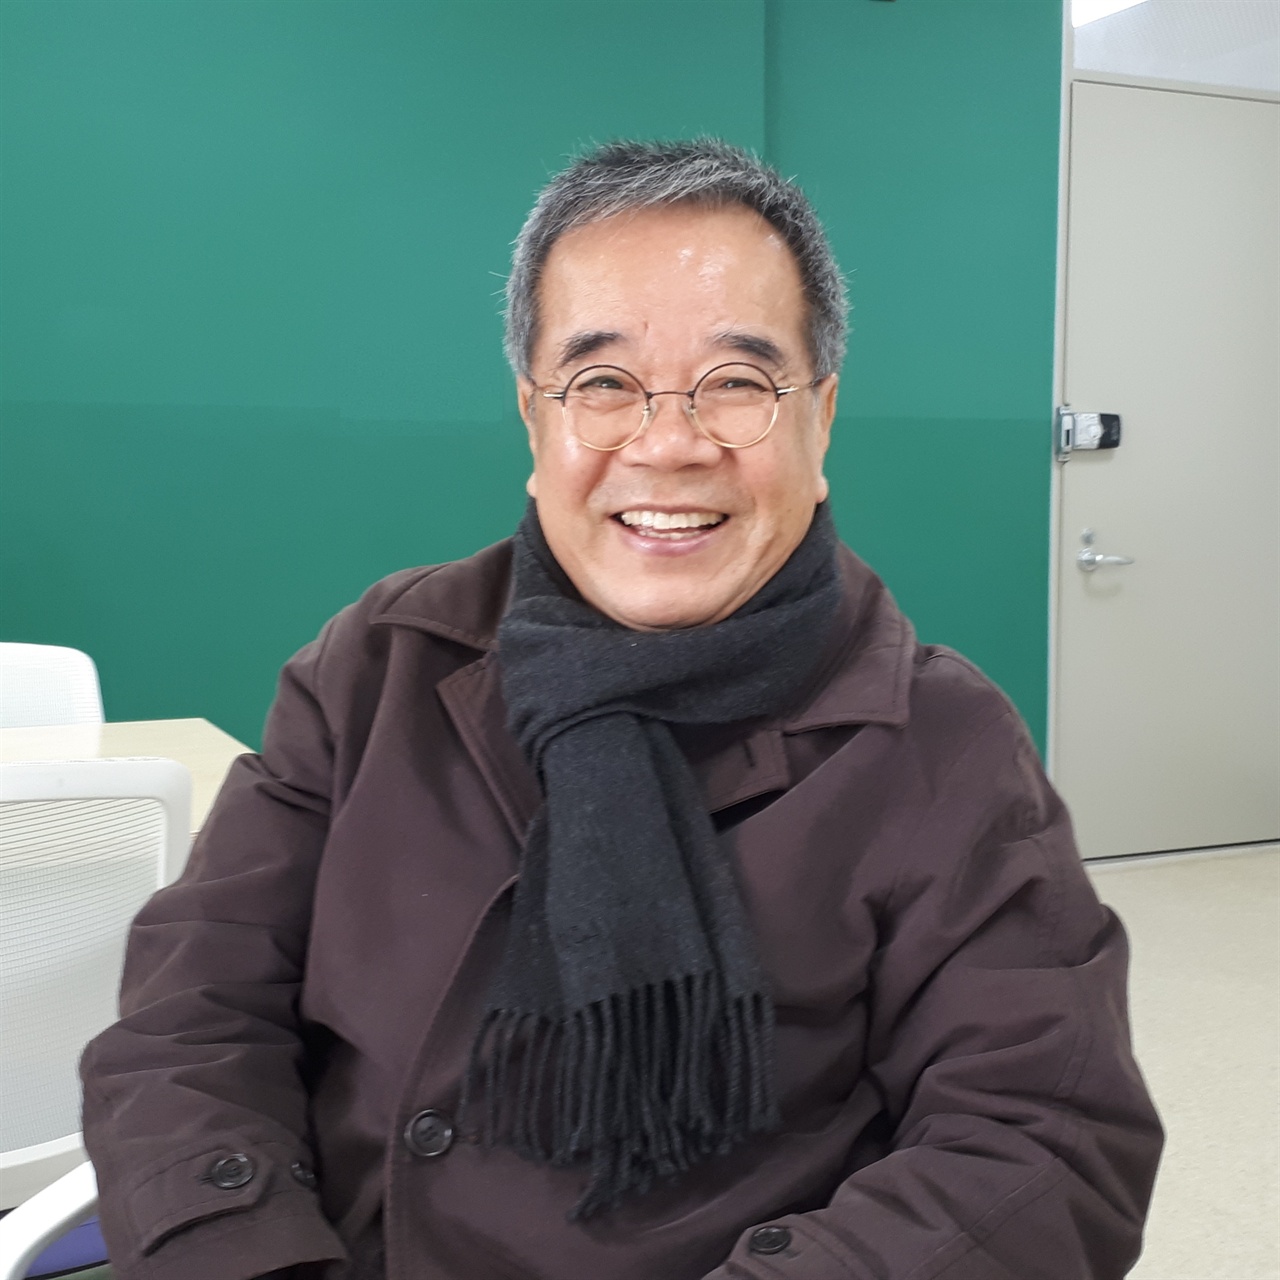 지난 9일(토) 강연을 위해 아산중앙도서관에 방문한 김용택 시인과 따로 진행한 인터뷰 자리에서 찍은 사진. 72세의 나이가 무색할 정도로 동안의 표정이 가득하다.   